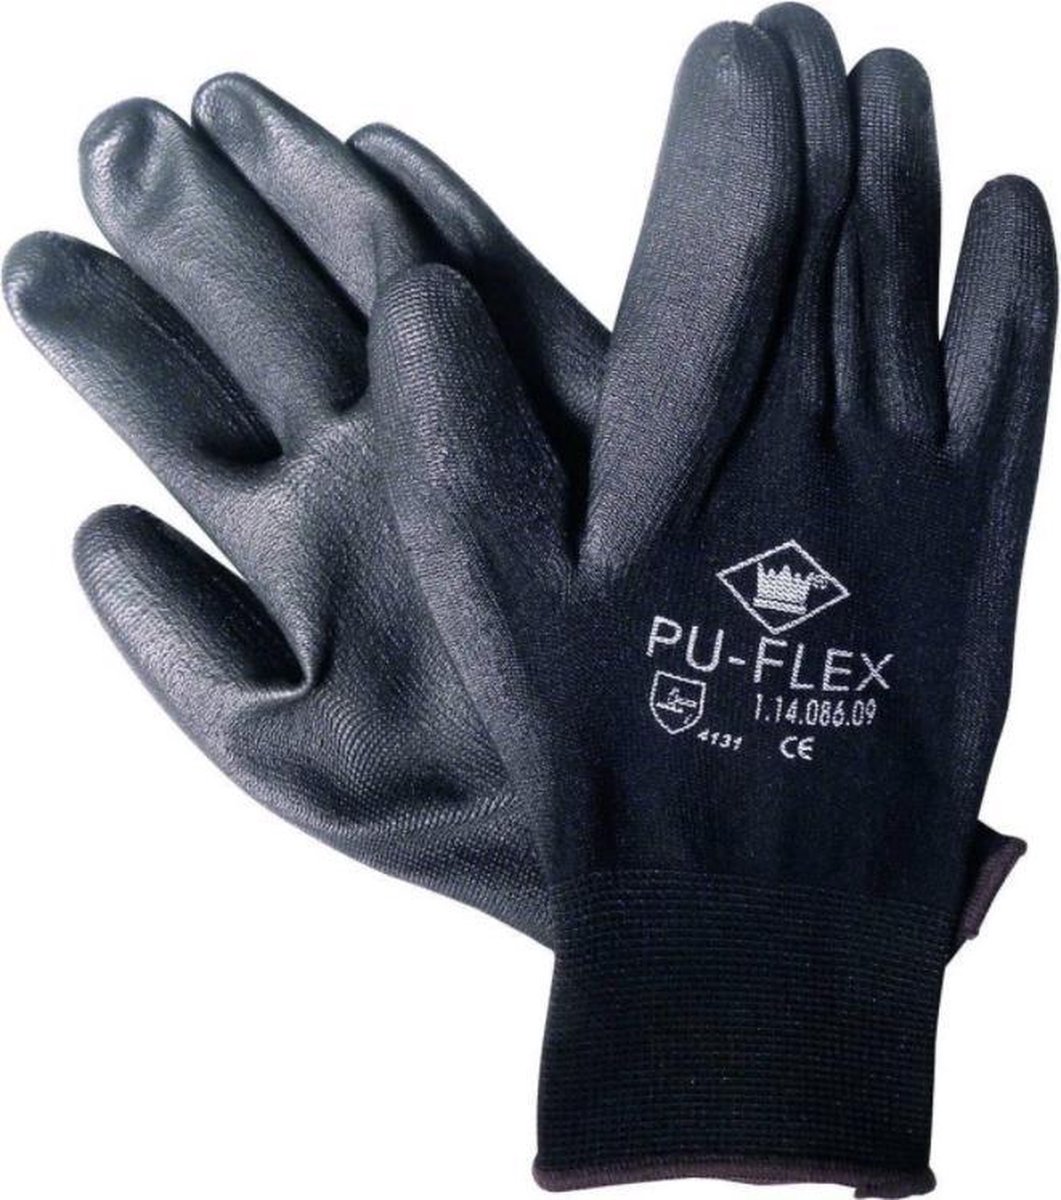 PU-Flex handschoen - zwart - maat XL (10) - M-Safe - (set a 12 paar)